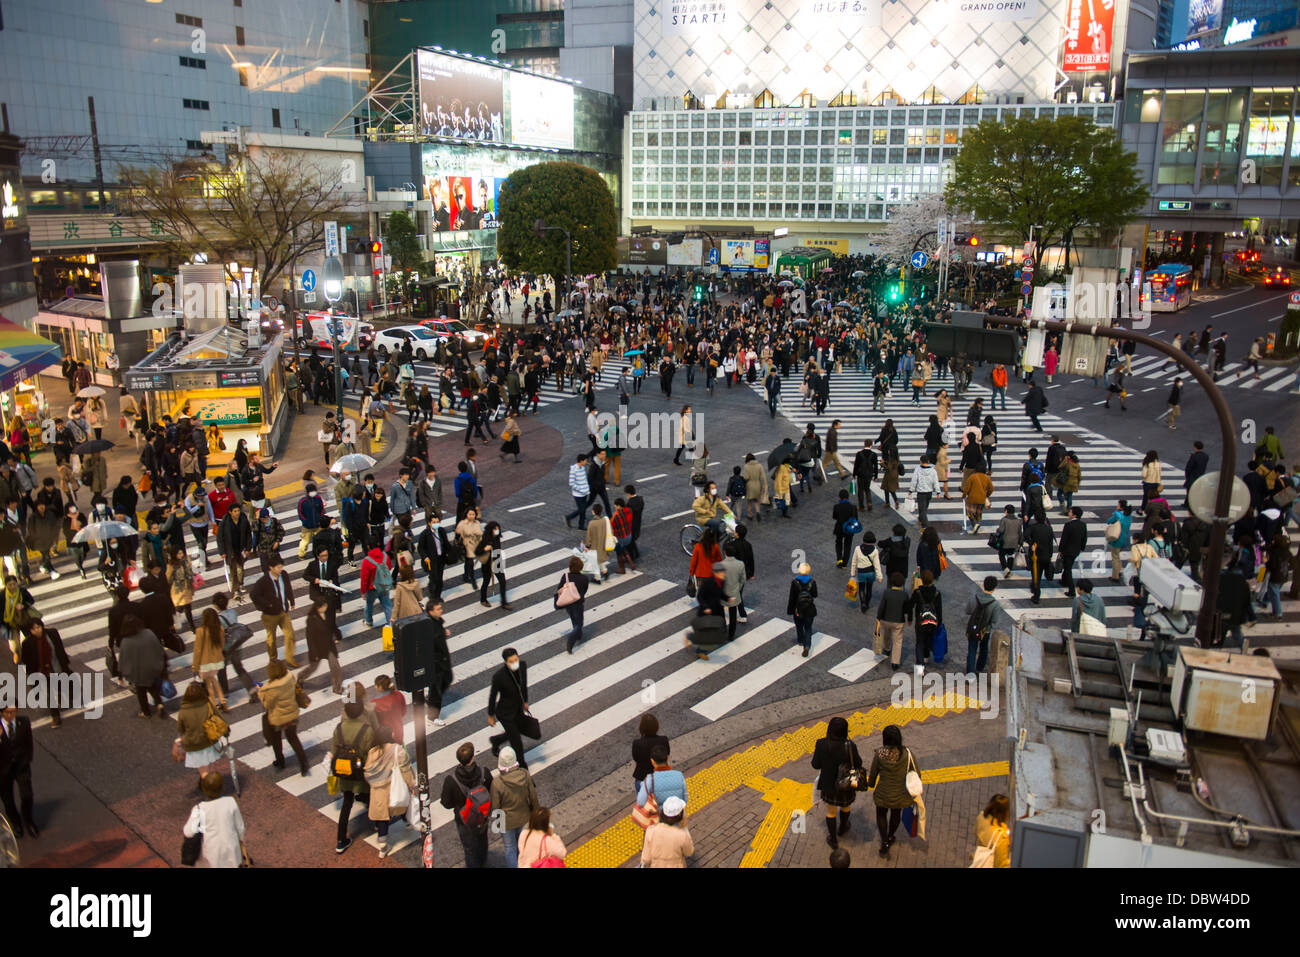 People crossing the busiest street crossing, Shibuya crossing, Tokyo, Japan, Asia Stock Photo